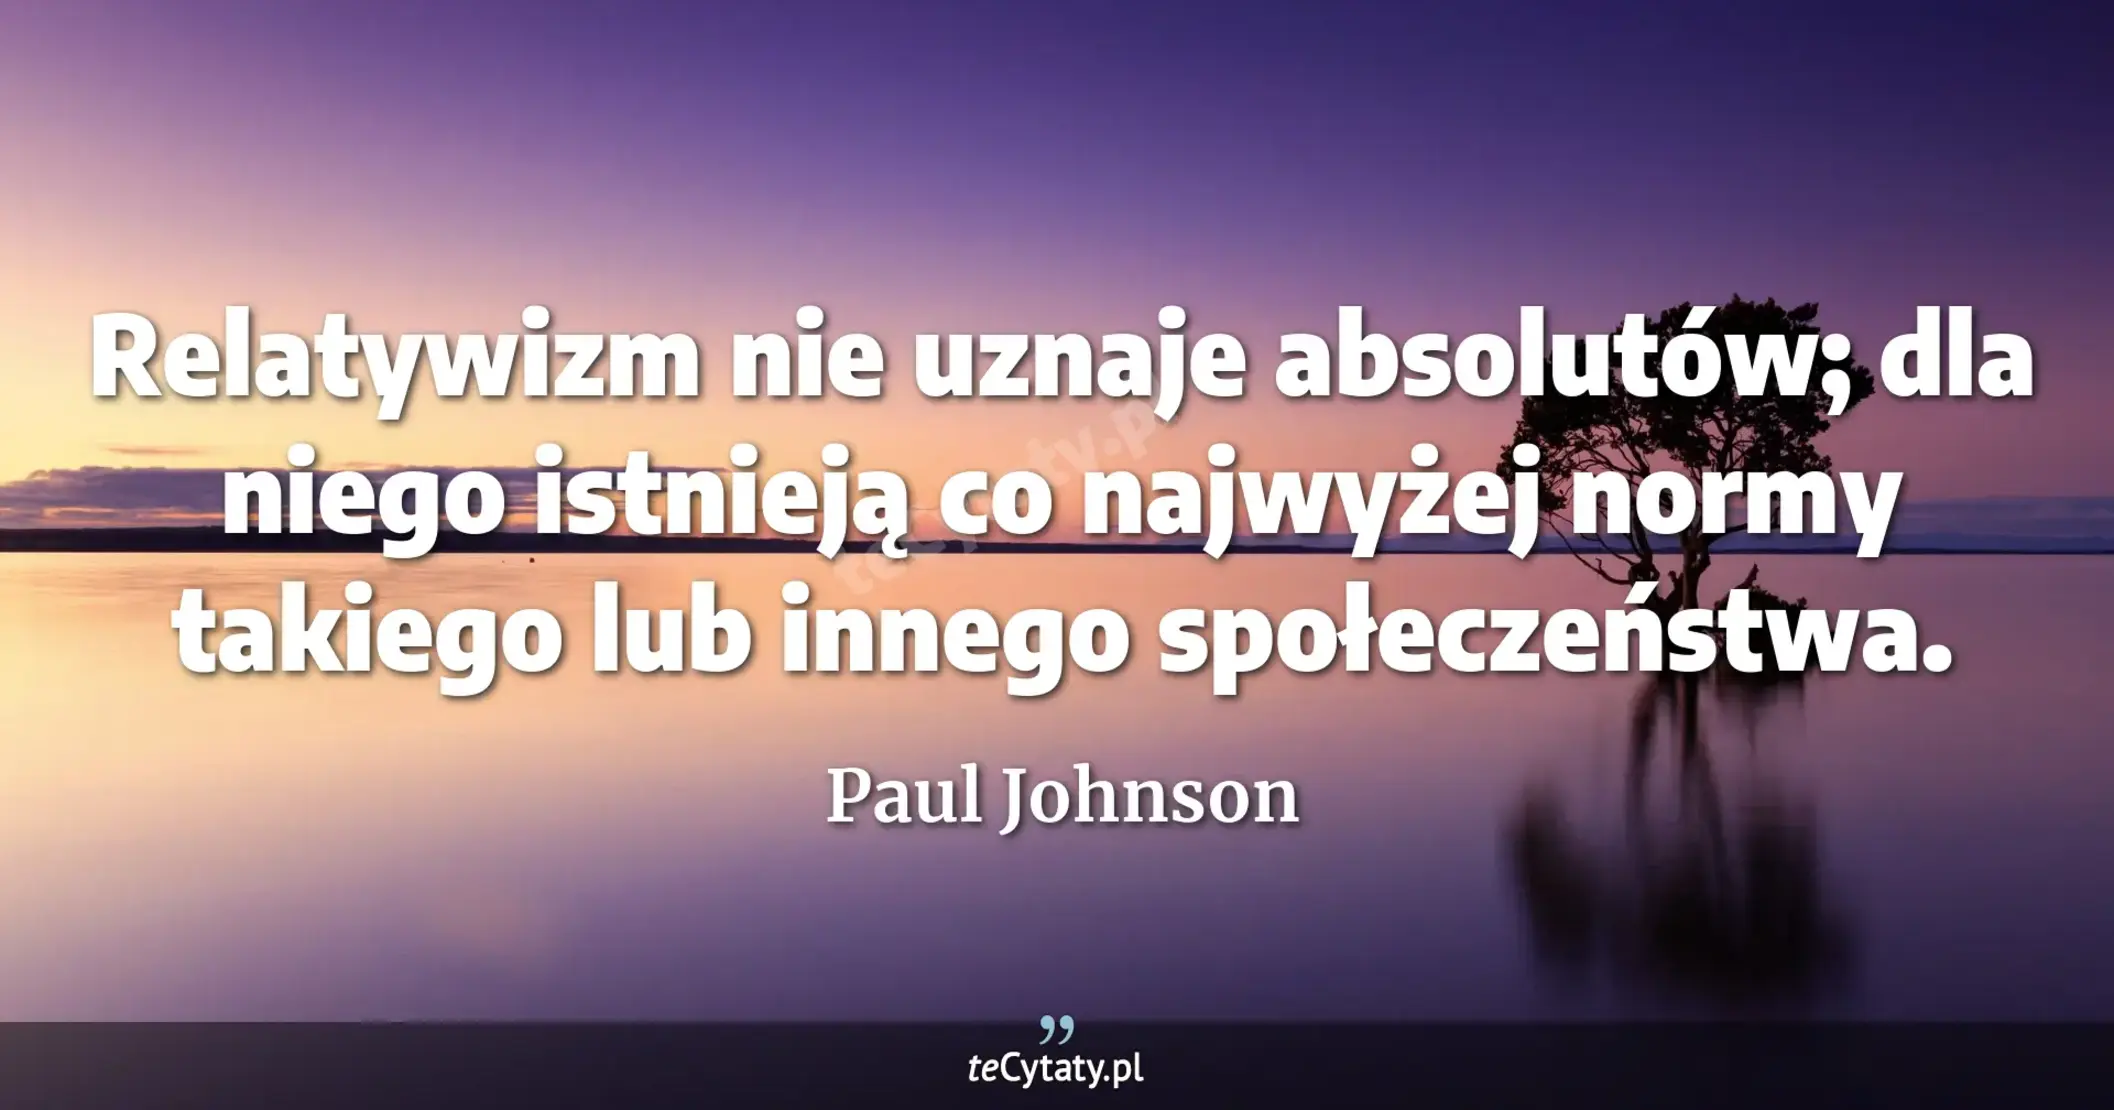 Relatywizm nie uznaje absolutów; dla niego istnieją co najwyżej normy takiego lub innego społeczeństwa. - Paul Johnson